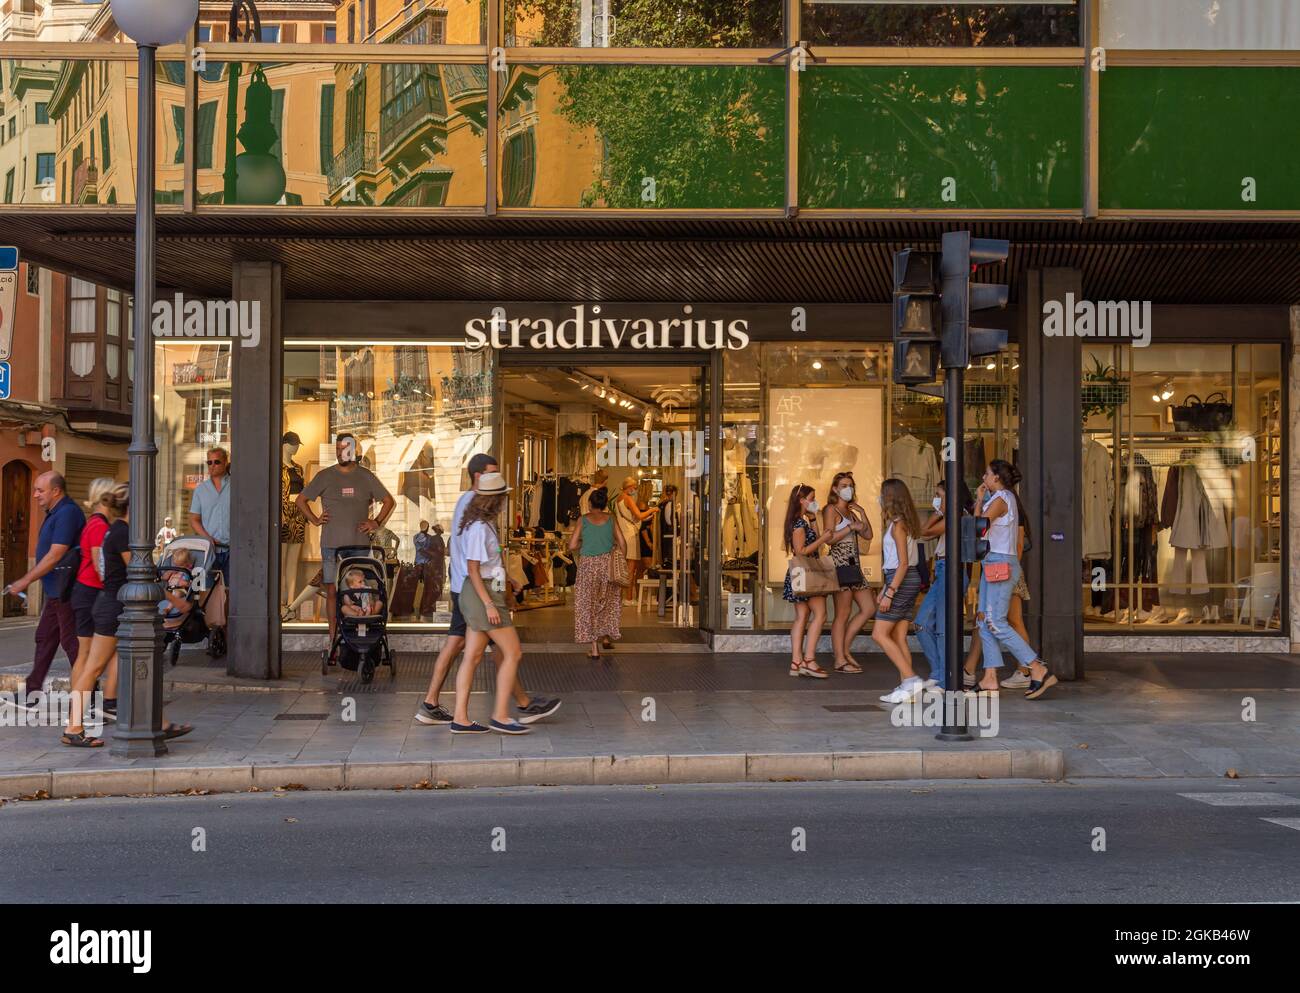 Palma de Mallorca, Spanien; september 10 2021: Hauptfassade einer  Einrichtung der internationalen Mode- und Accessoires-Einzelhandelskette  Stradivarius, in Stockfotografie - Alamy